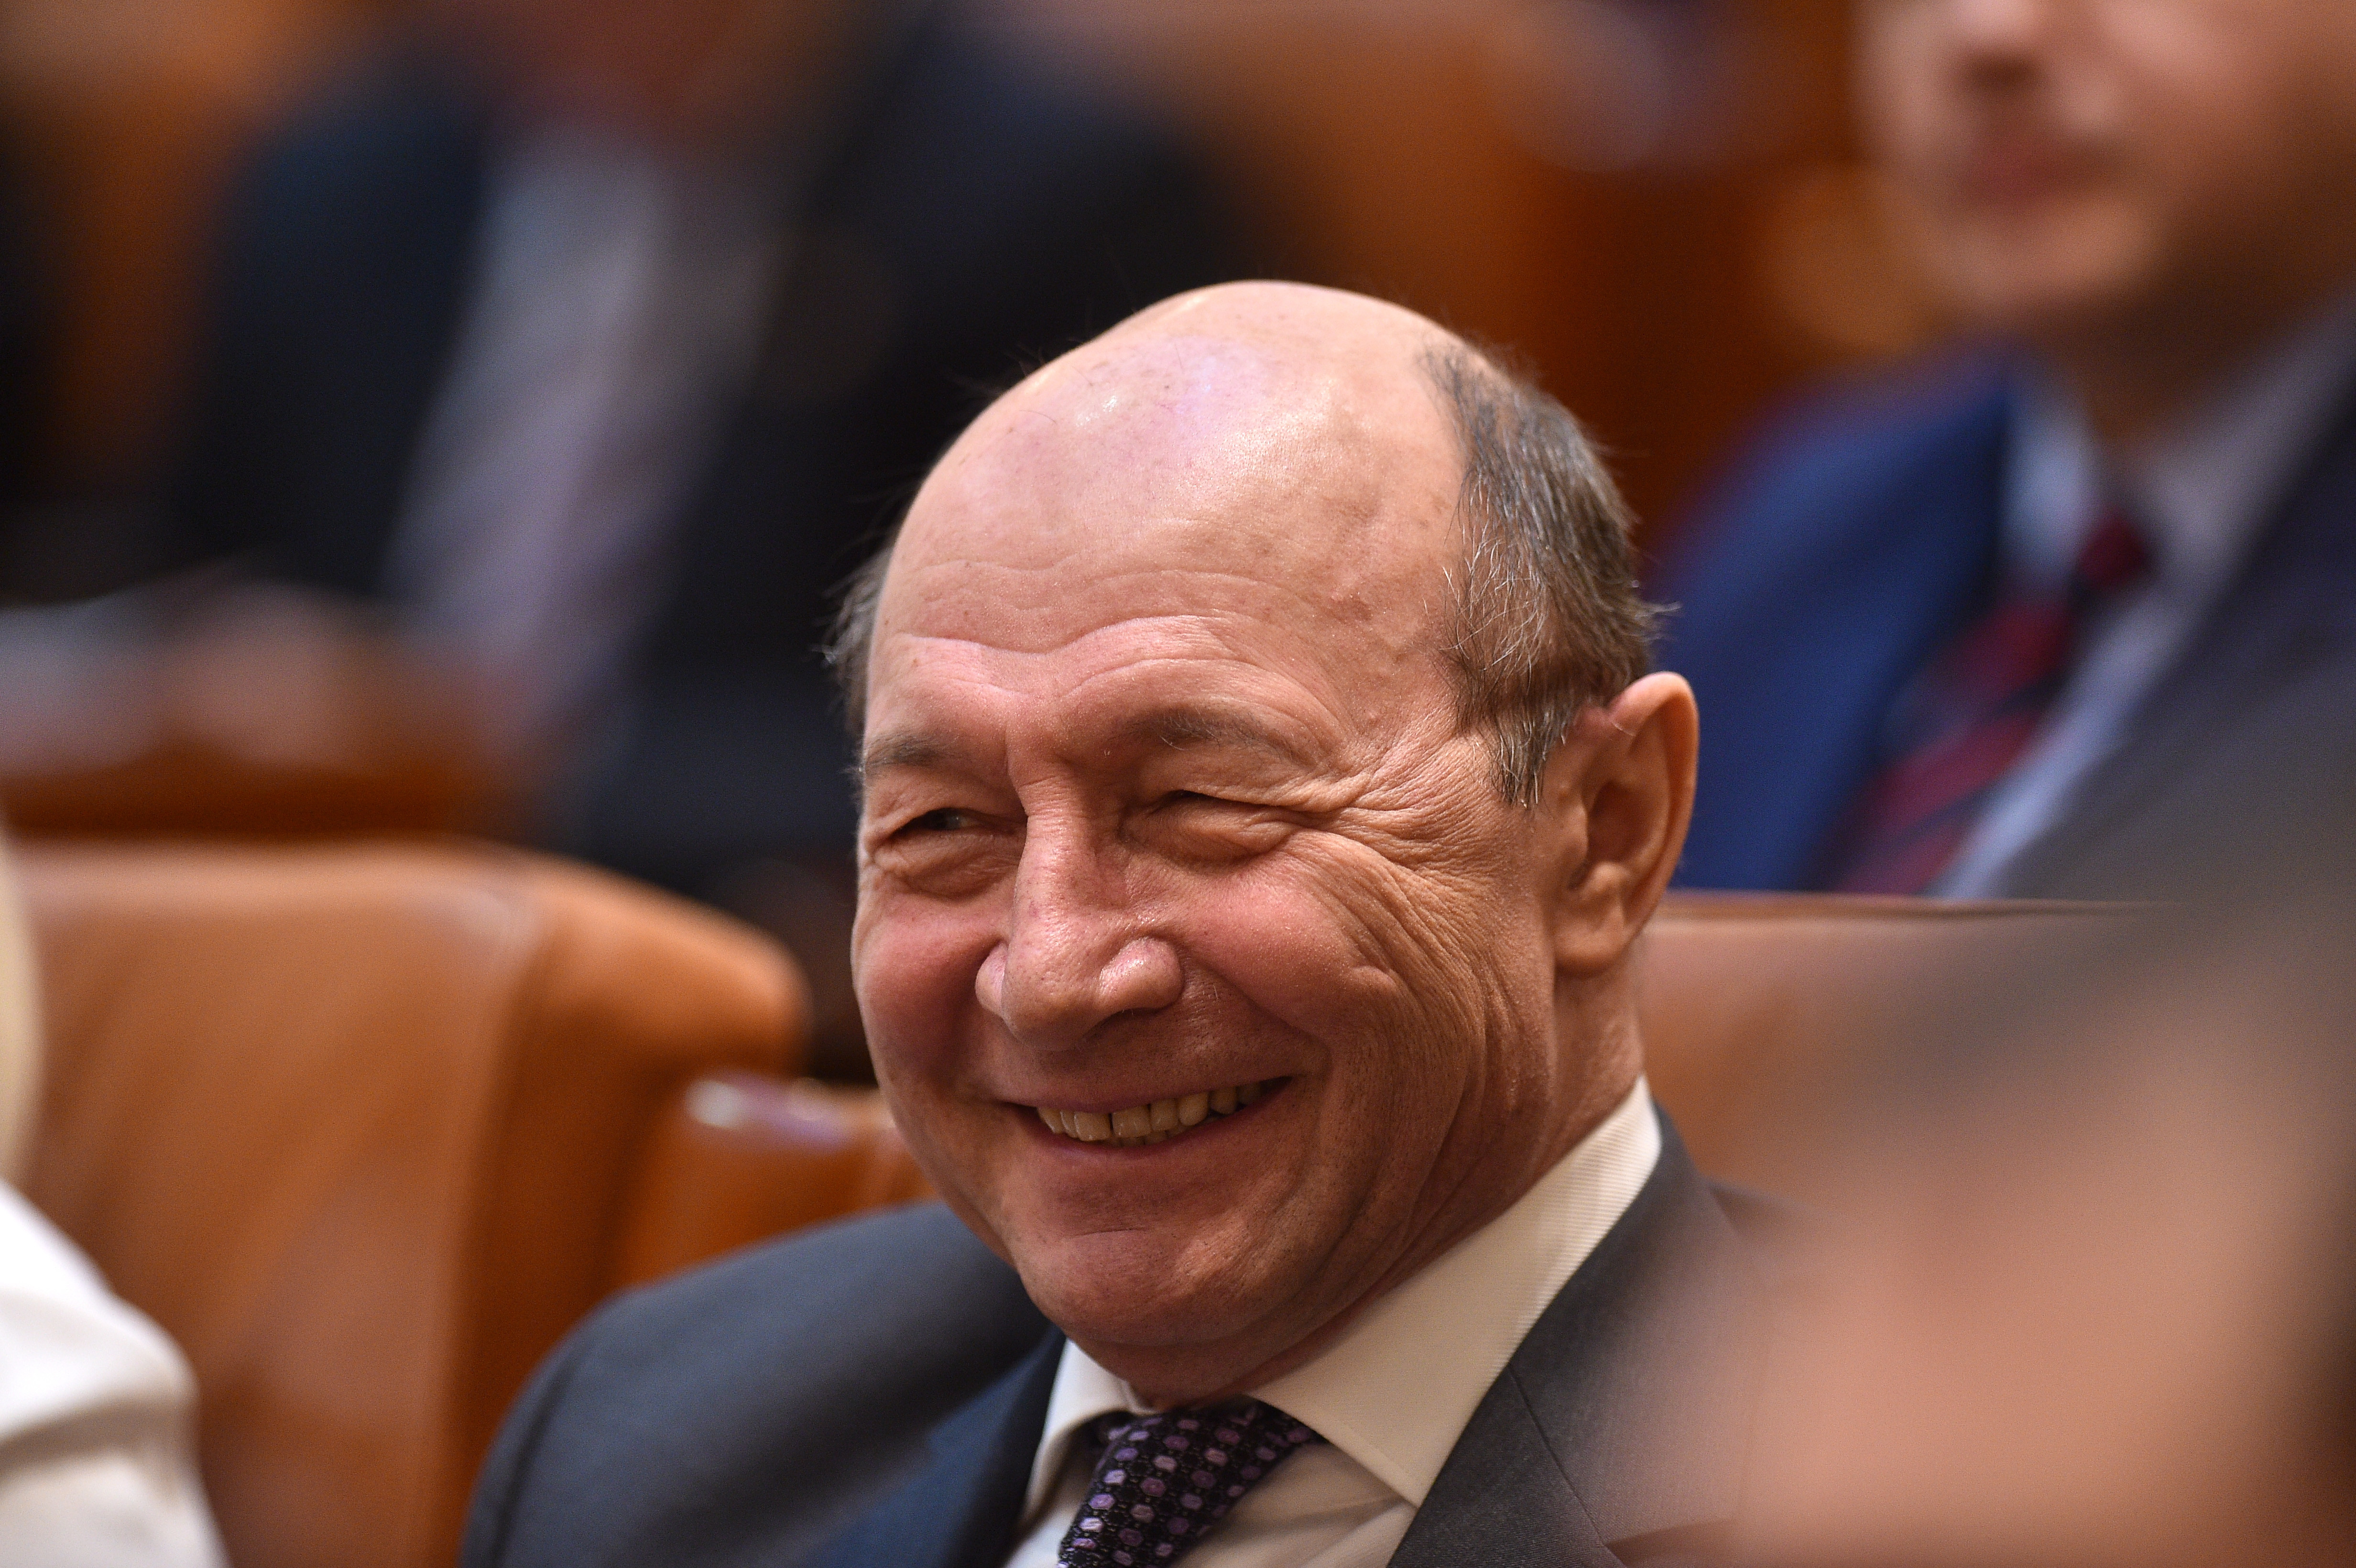 Traian Băsescu spune că premierul Cîțu ar trebui să-l remanieze pe Drulă: ”Un atac mizerabil”